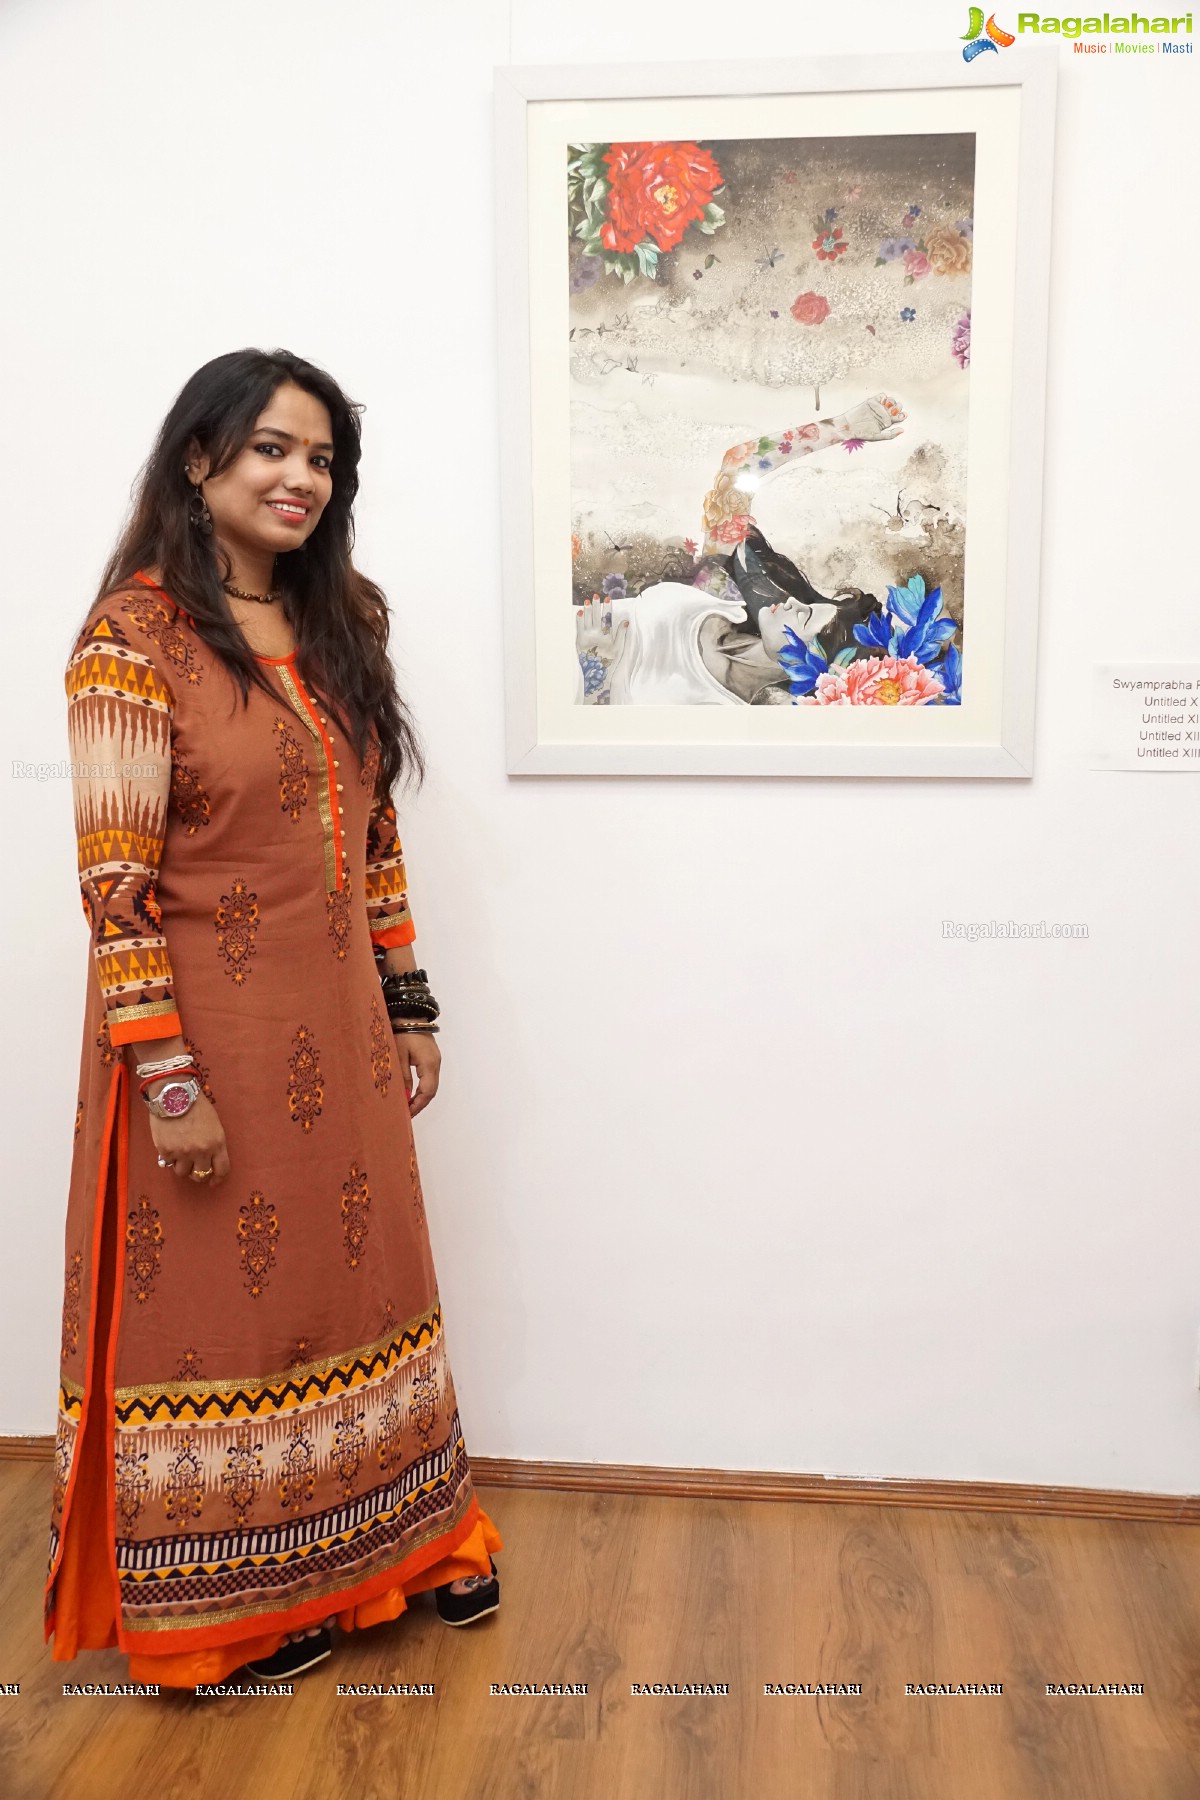 Topos of Imagination with Mrinmoy Debbarma, Purnna Behera and Swayamprabha Parida at Kalakriti Art Gallery